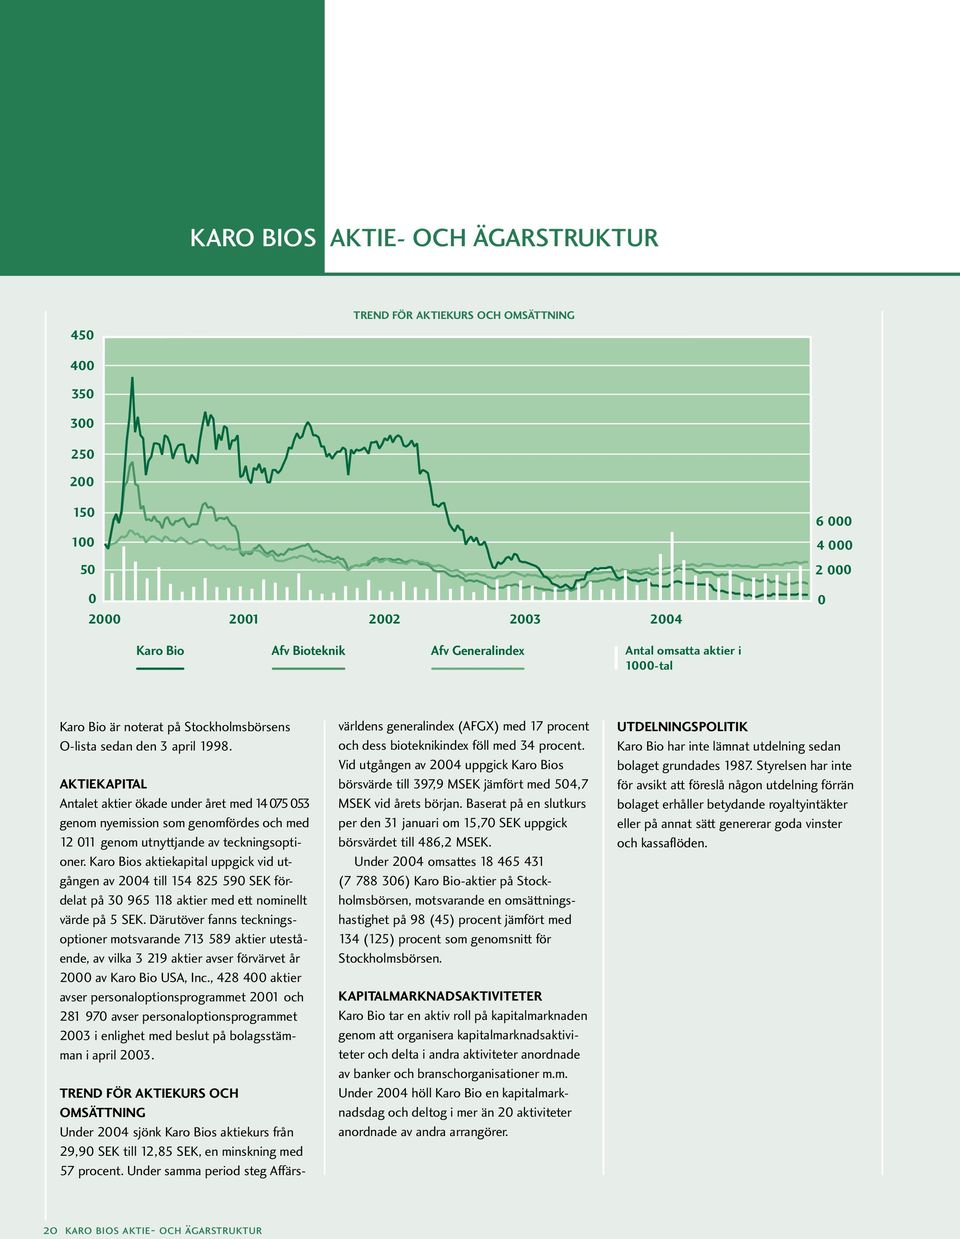 Karo Bios aktiekapital uppgick vid utgången av 2004 till 154 825 590 SEK fördelat på 30 965 118 aktier med ett nominellt värde på 5 SEK.